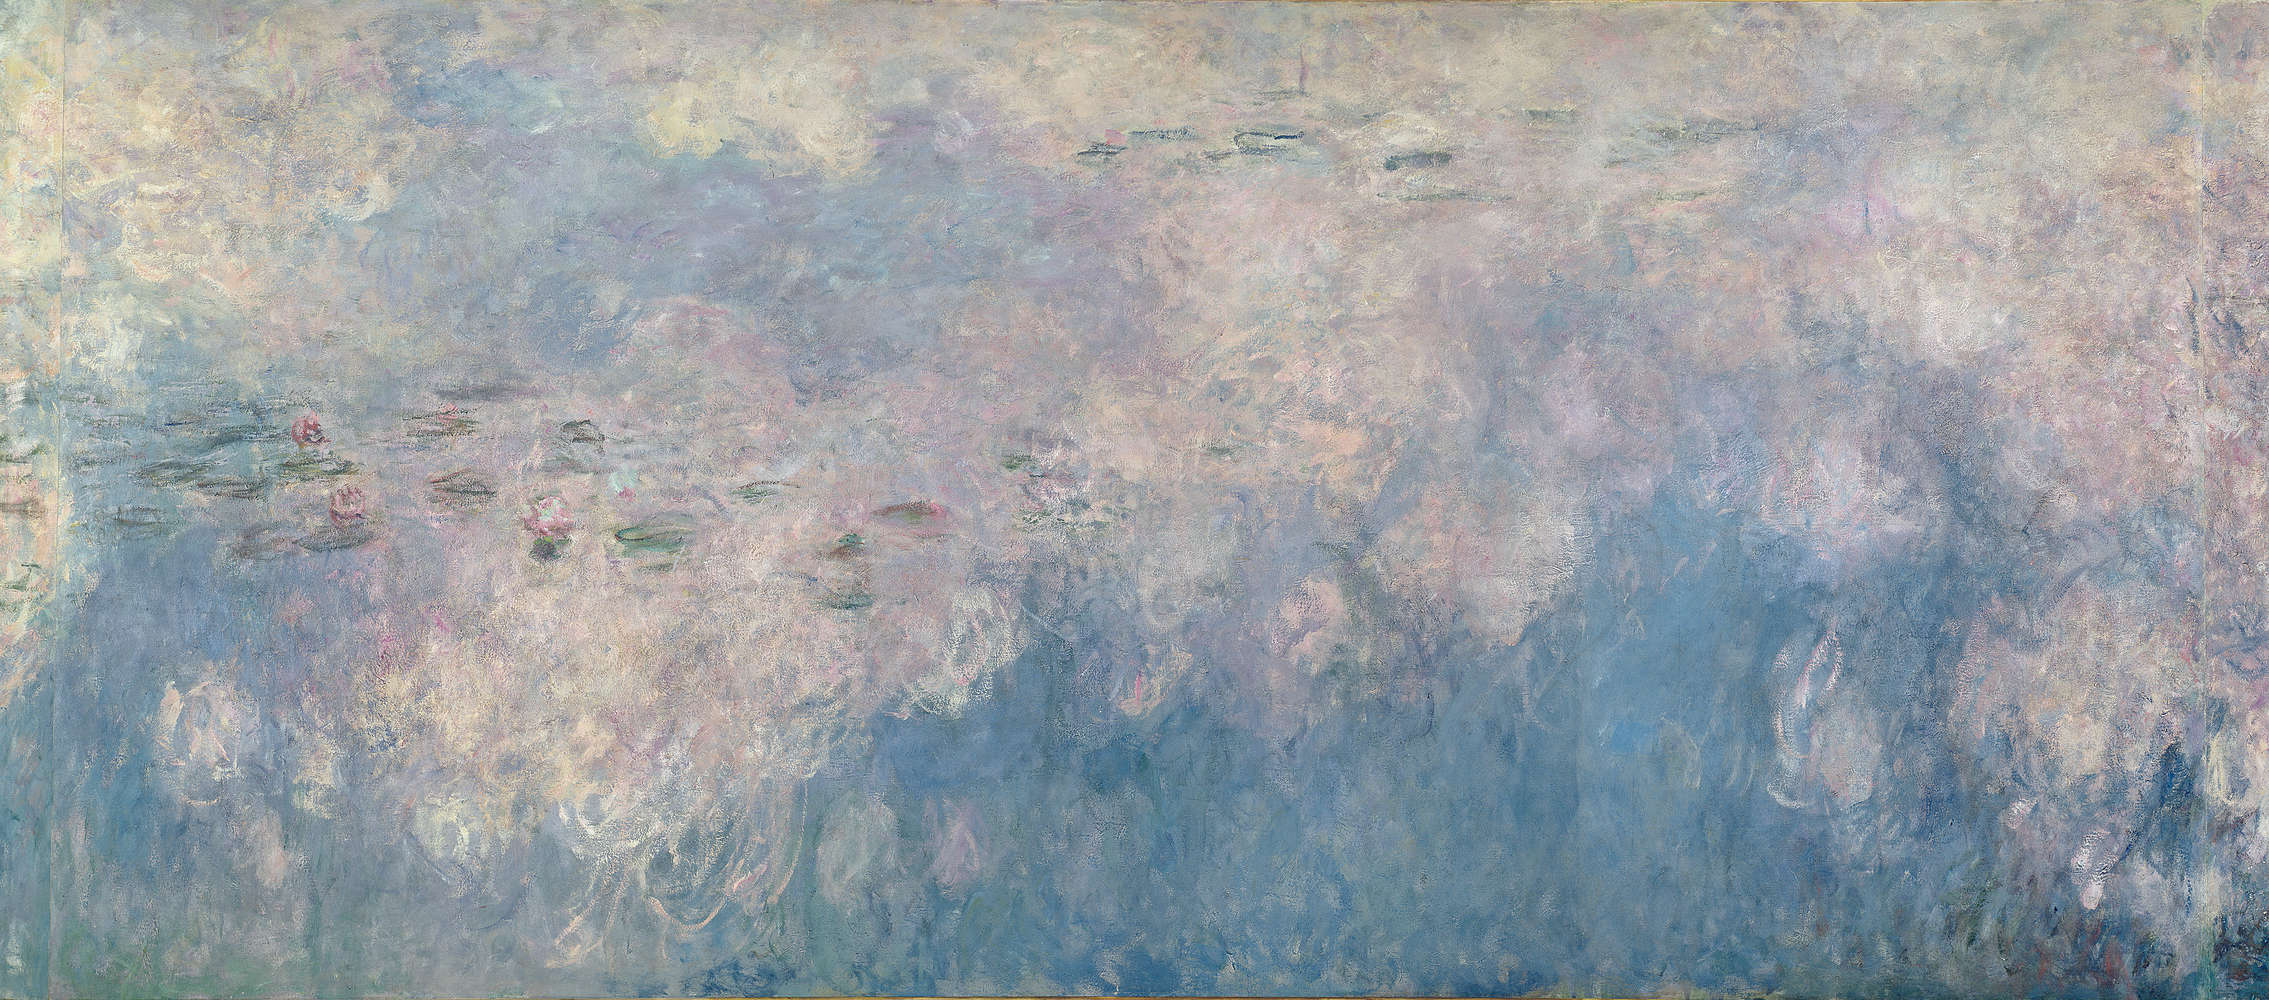             Fototapete "Die Seerosen Die Wolken" von Claude Monet
        